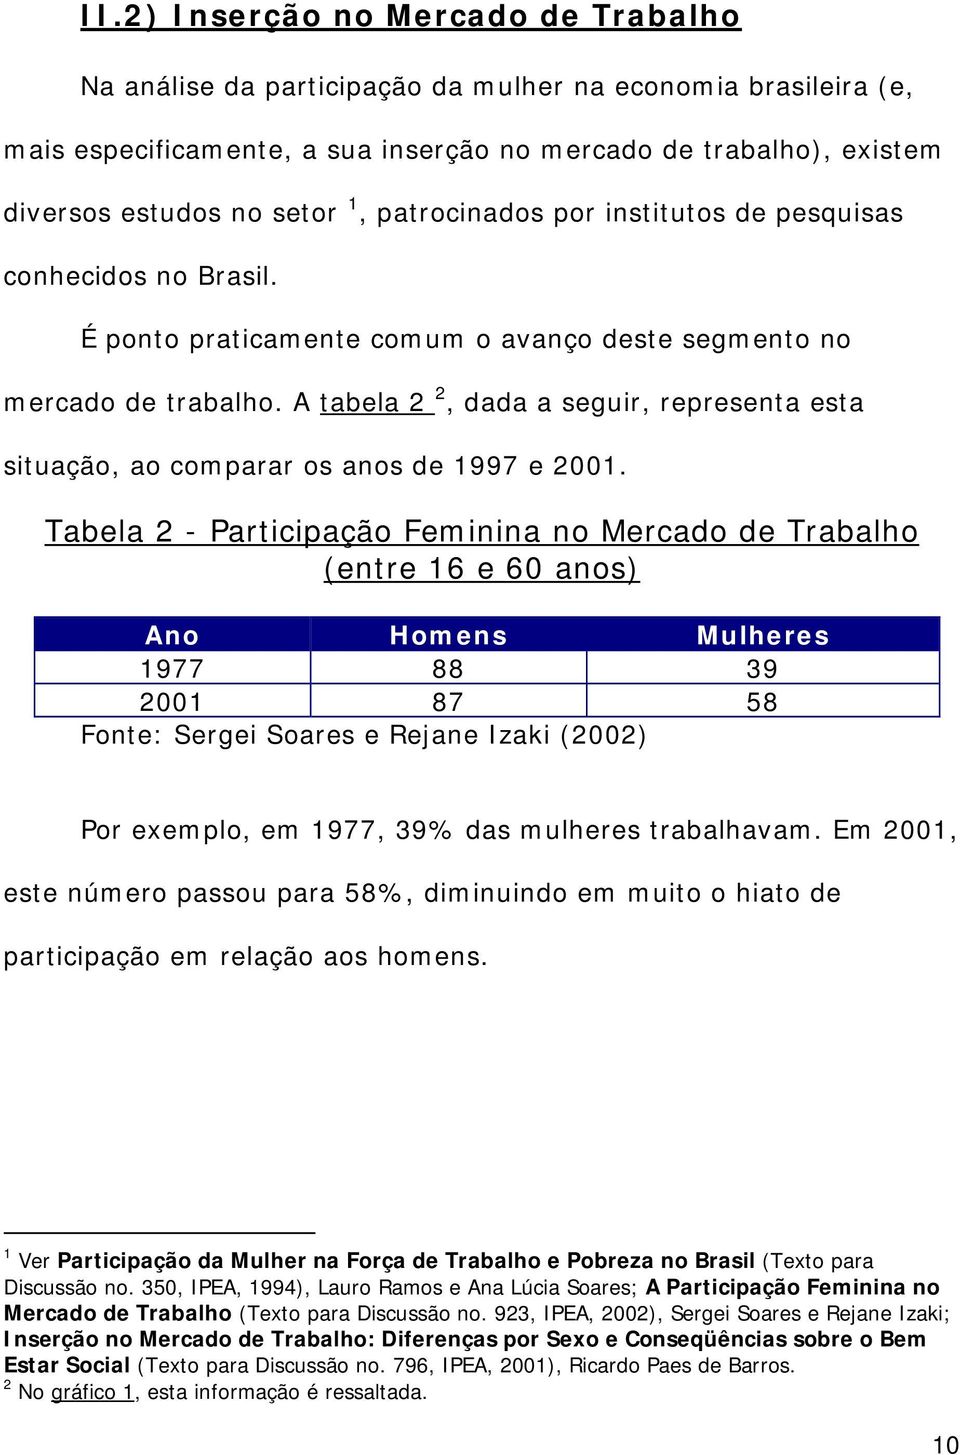 A tabela 2 2, dada a seguir, representa esta situação, ao comparar os anos de 1997 e 2001.